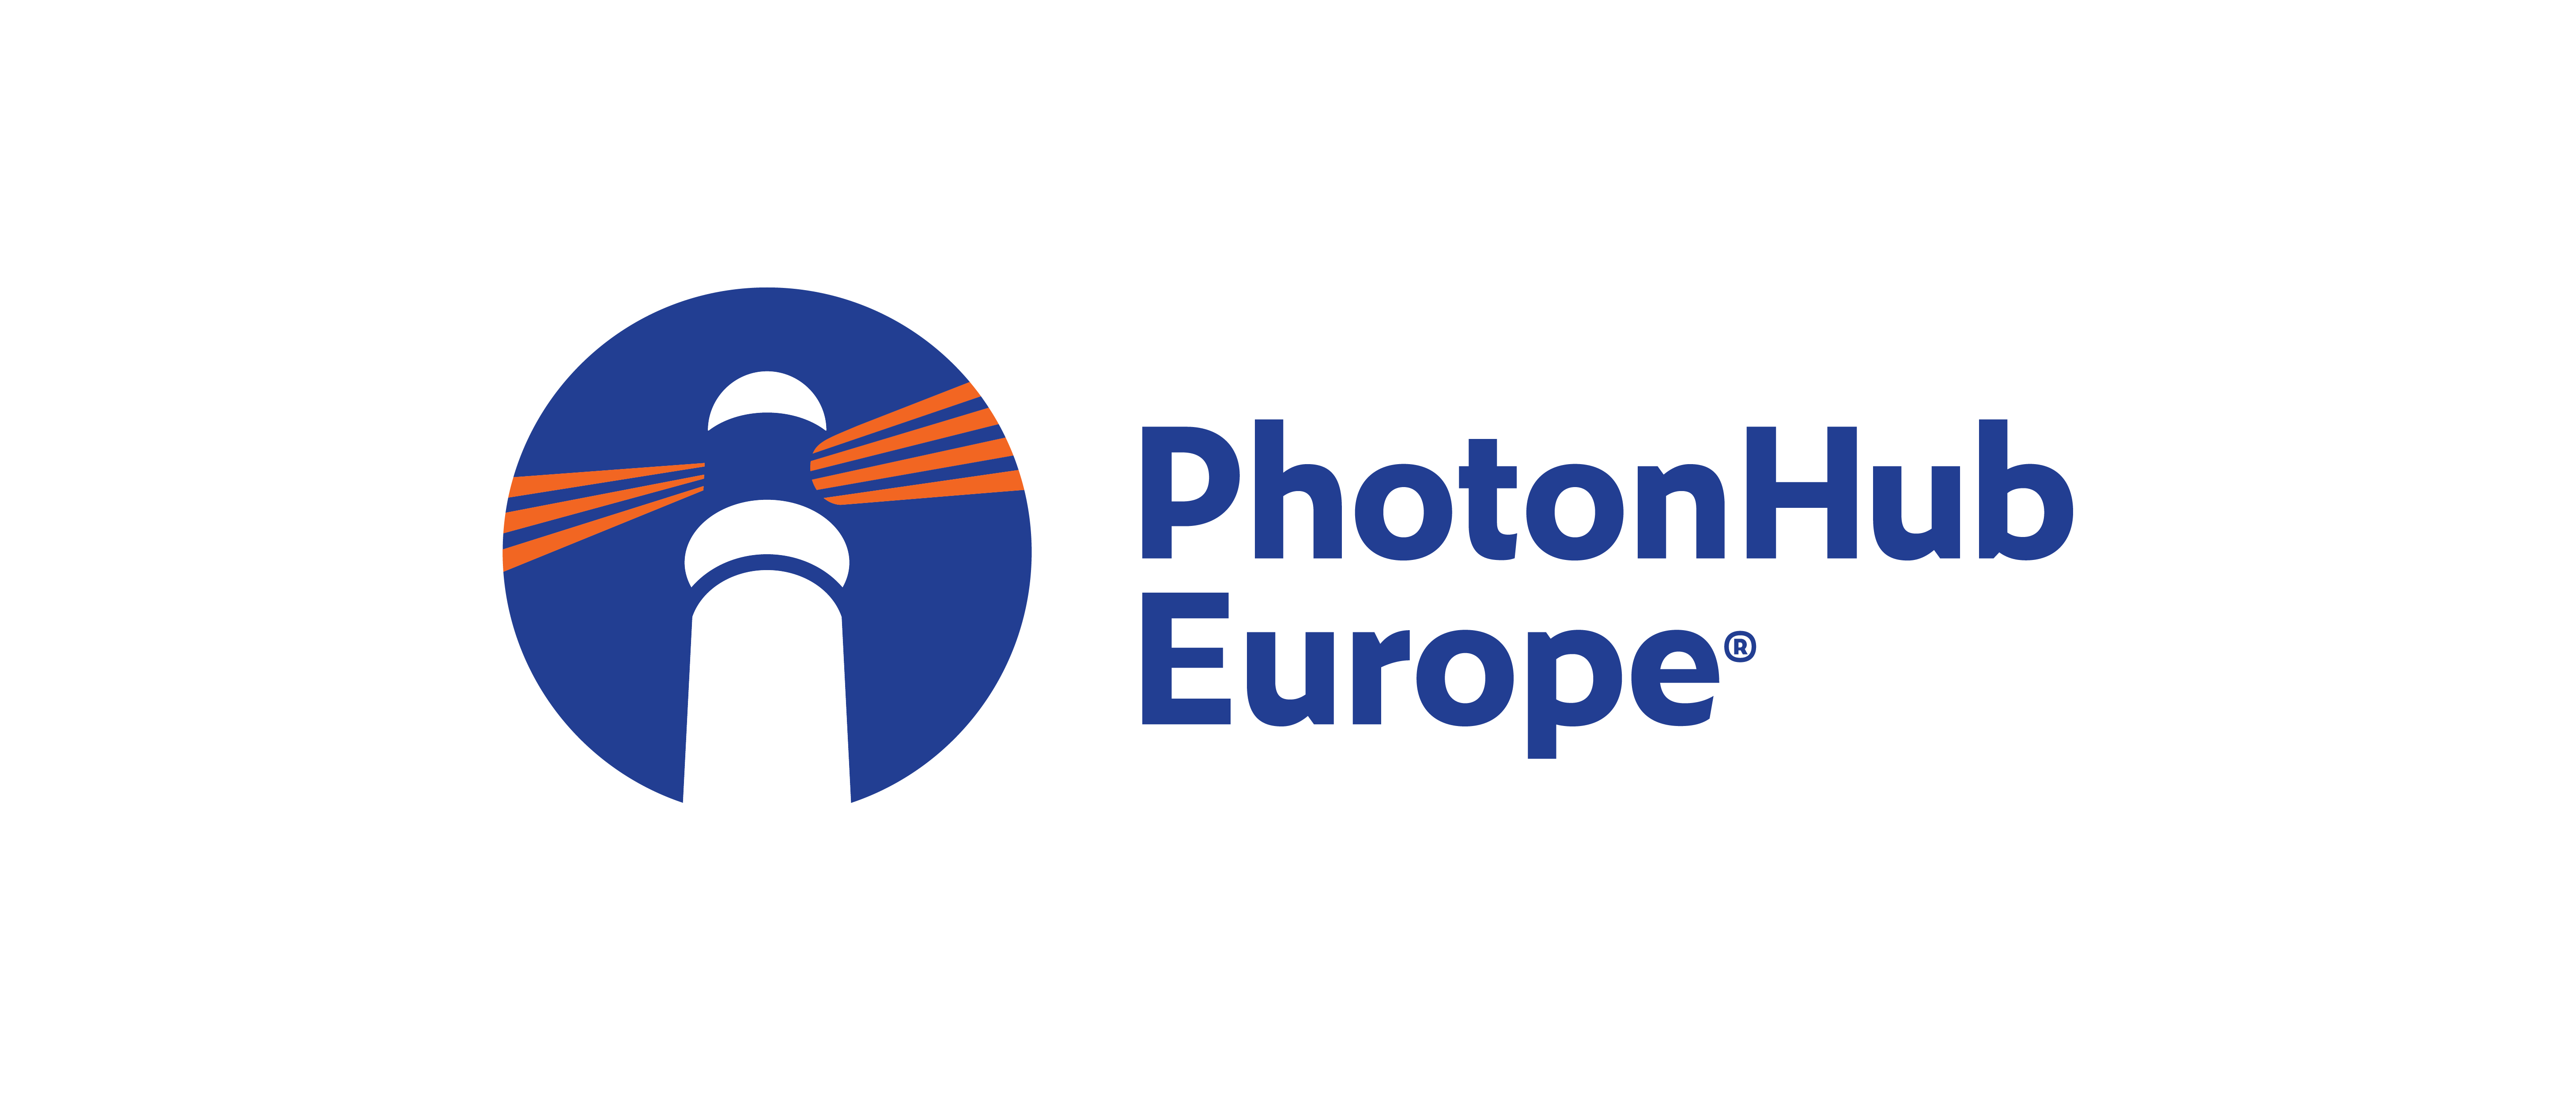 Photon Hub Europe Logo large 01